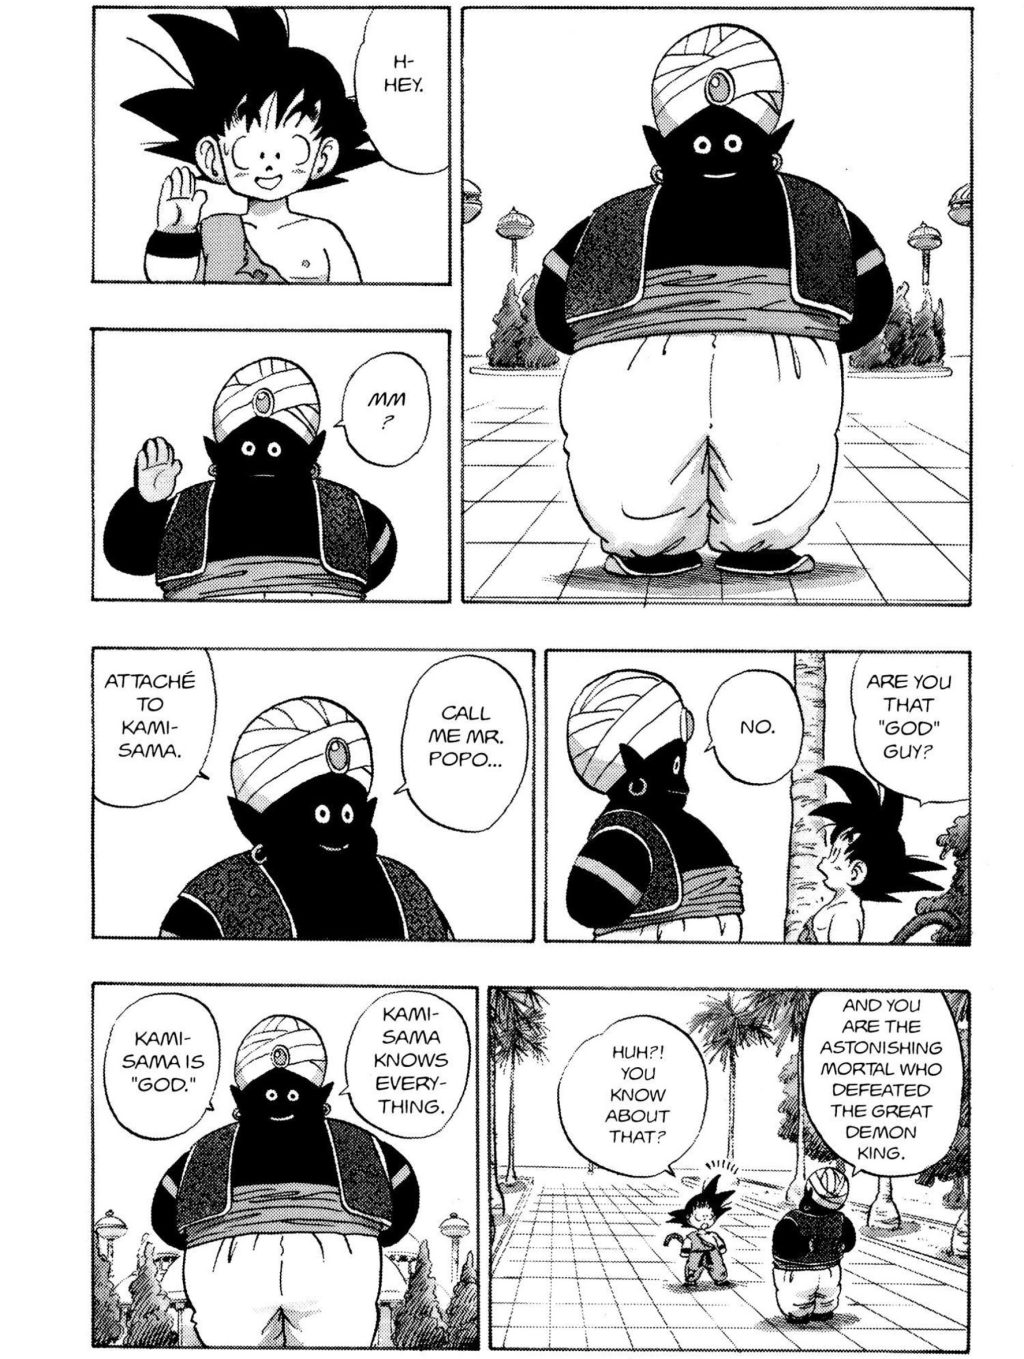 Goku conhece o Sr. Popo em Dragon Ball Capítulo 163 "O Santuário de Kami-sama" (1988), Shueisha.  Palavras e arte de Akira Toriyama.